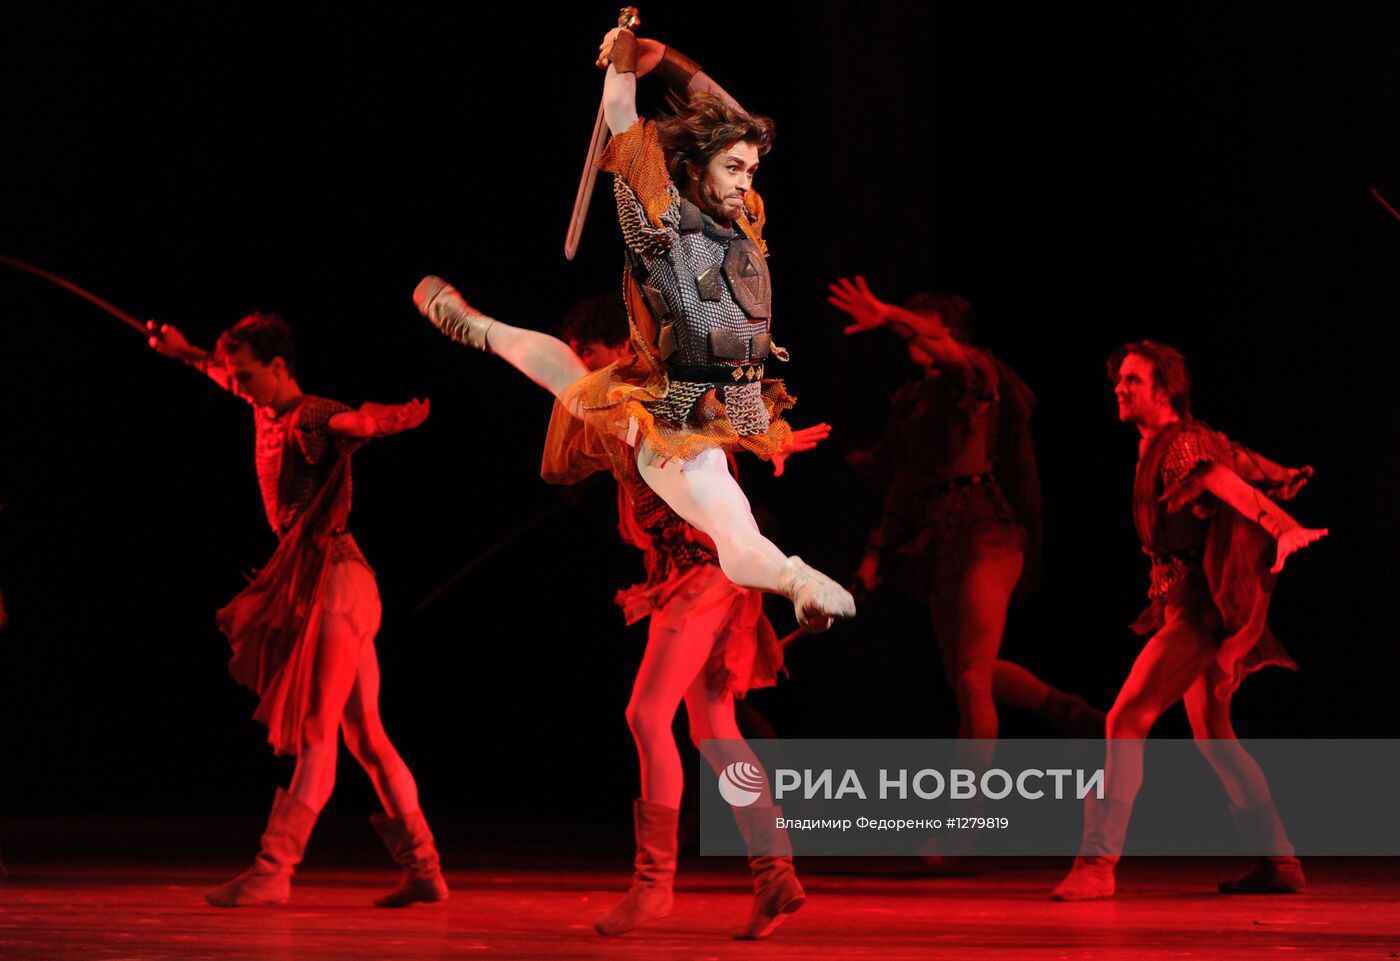 Прогон балета "Иван Грозный" в Большом театре